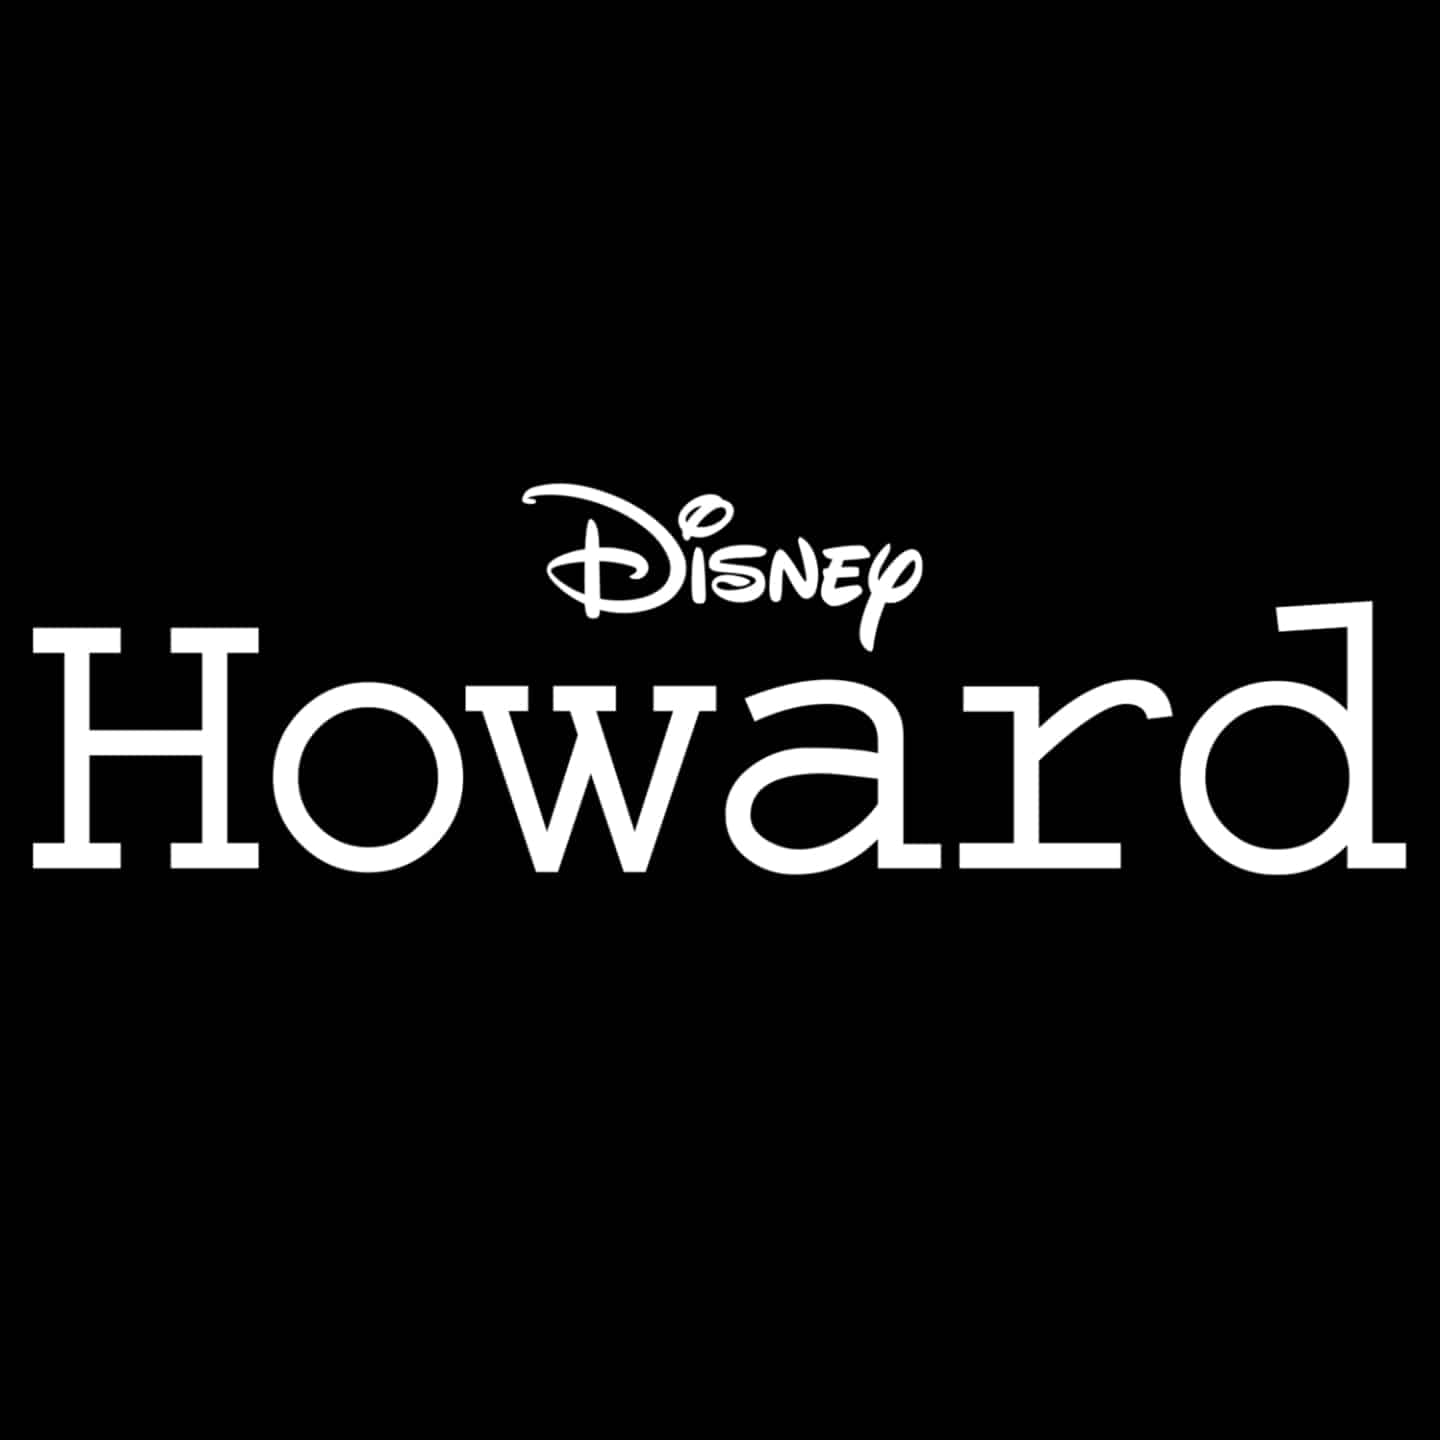 Le titre "Howard" est écrit en blanc sur un fond noir.